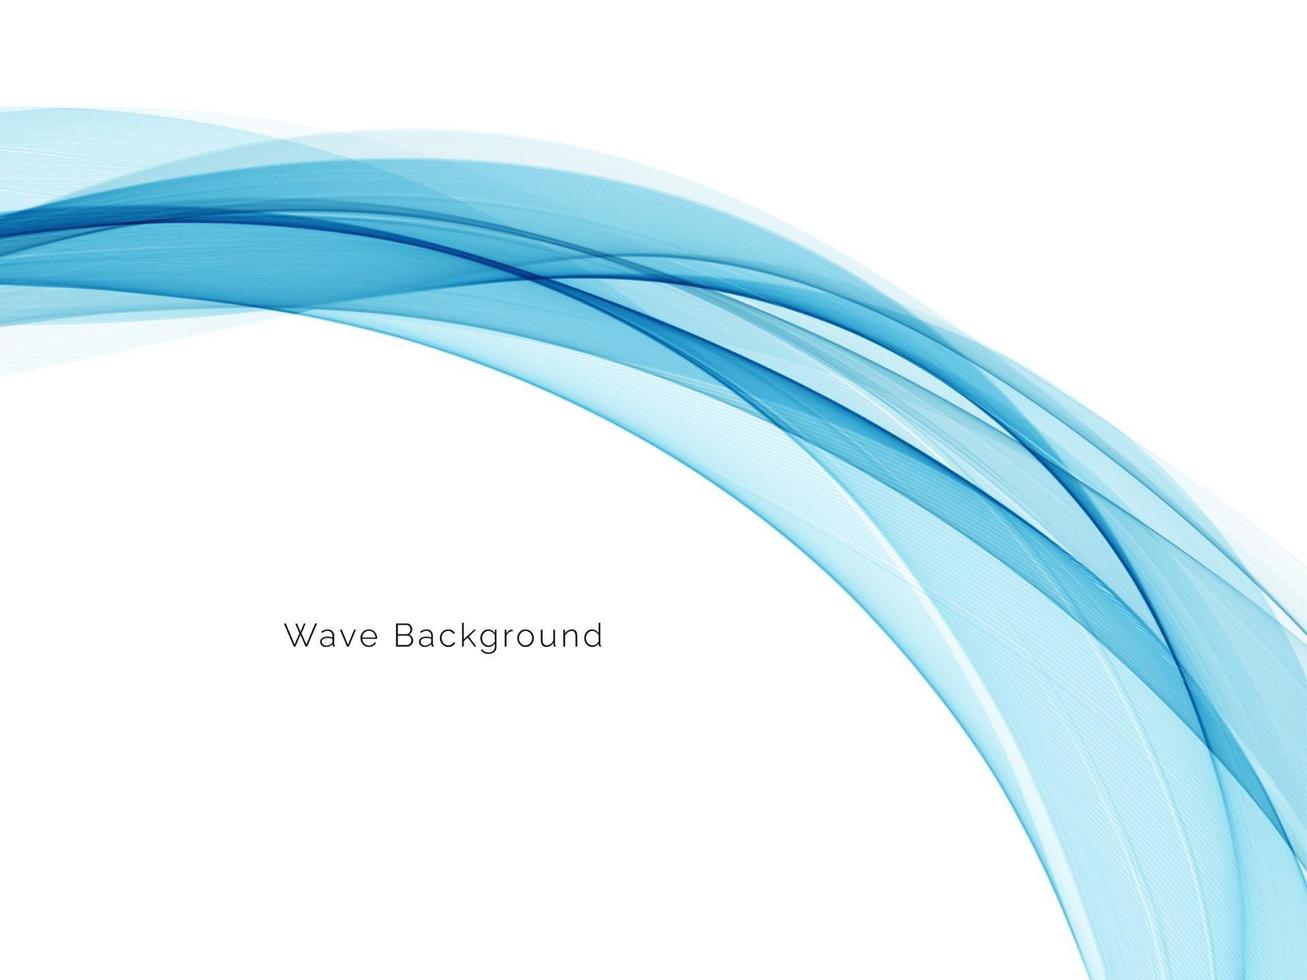 fond moderne de conception de vague bleue décorative vecteur